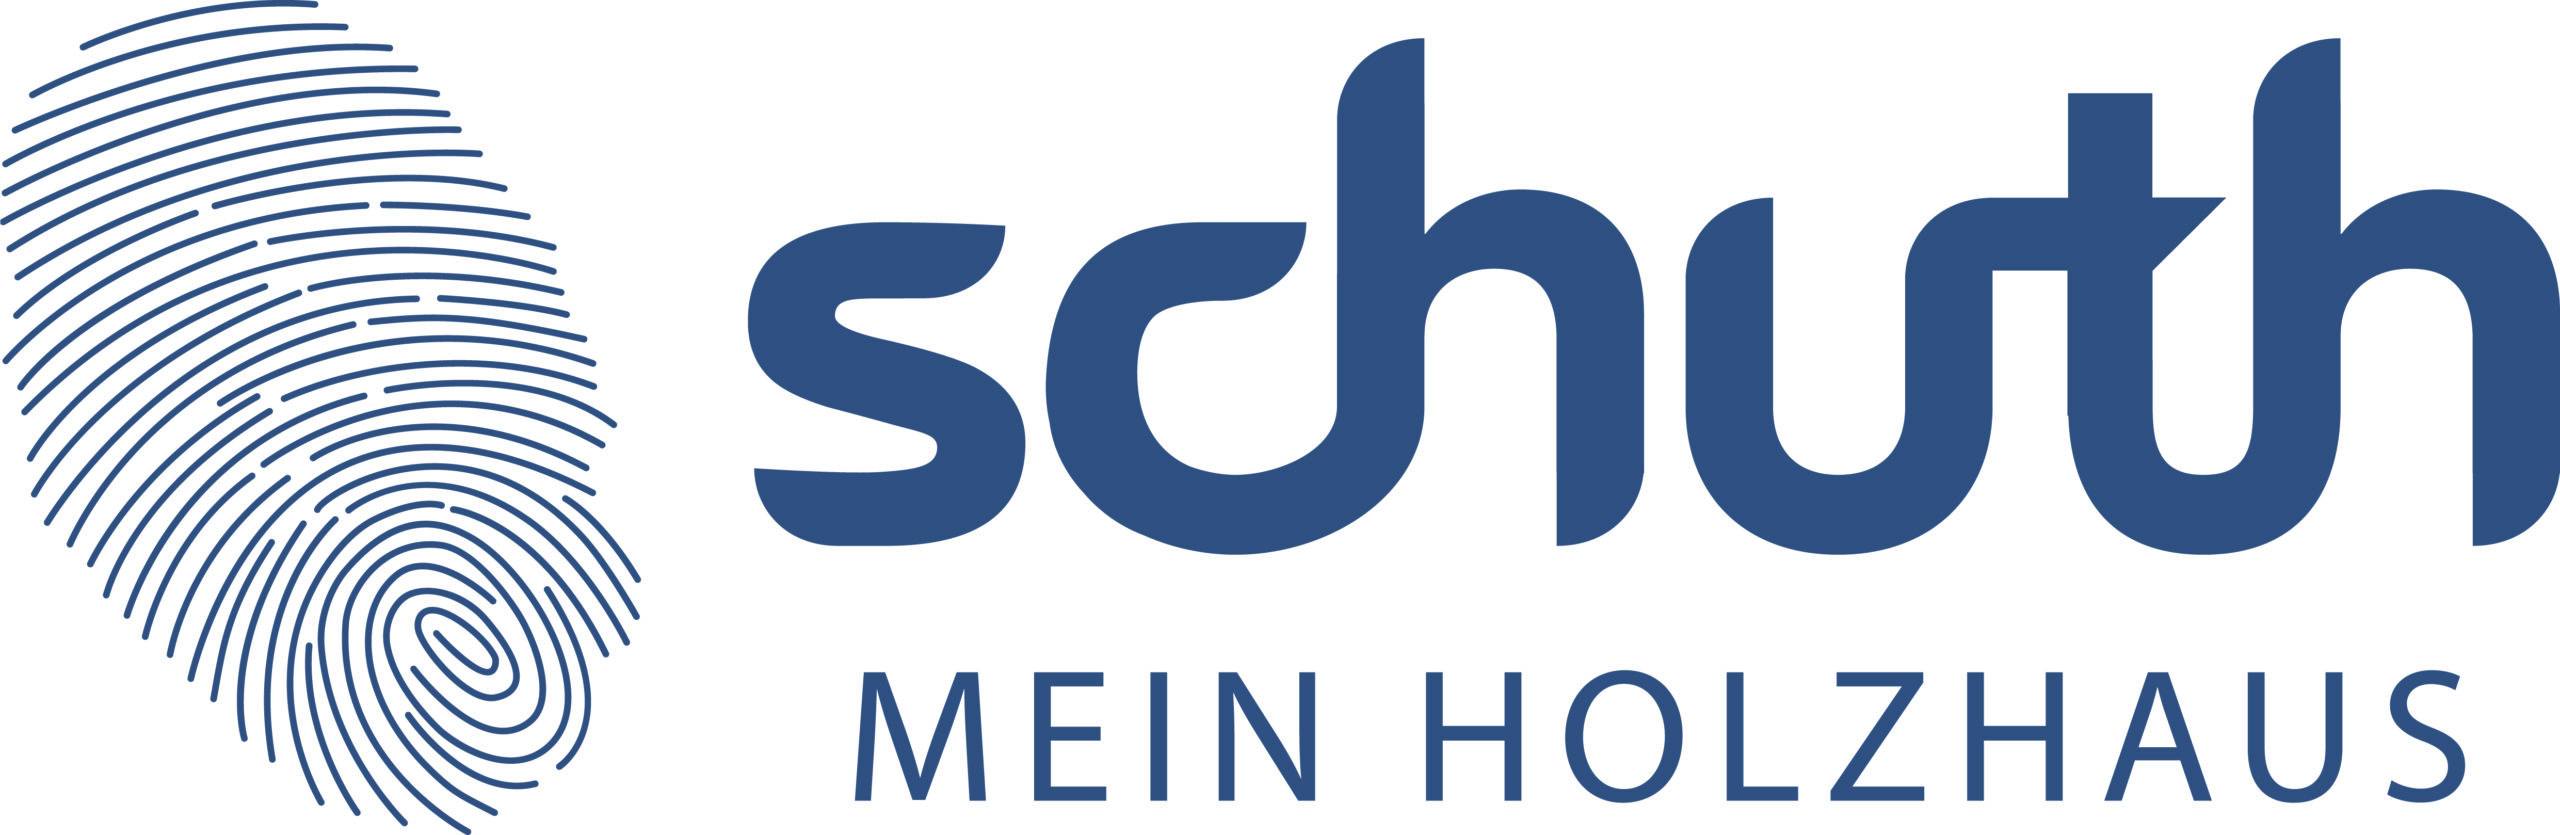 Schuth GmbH